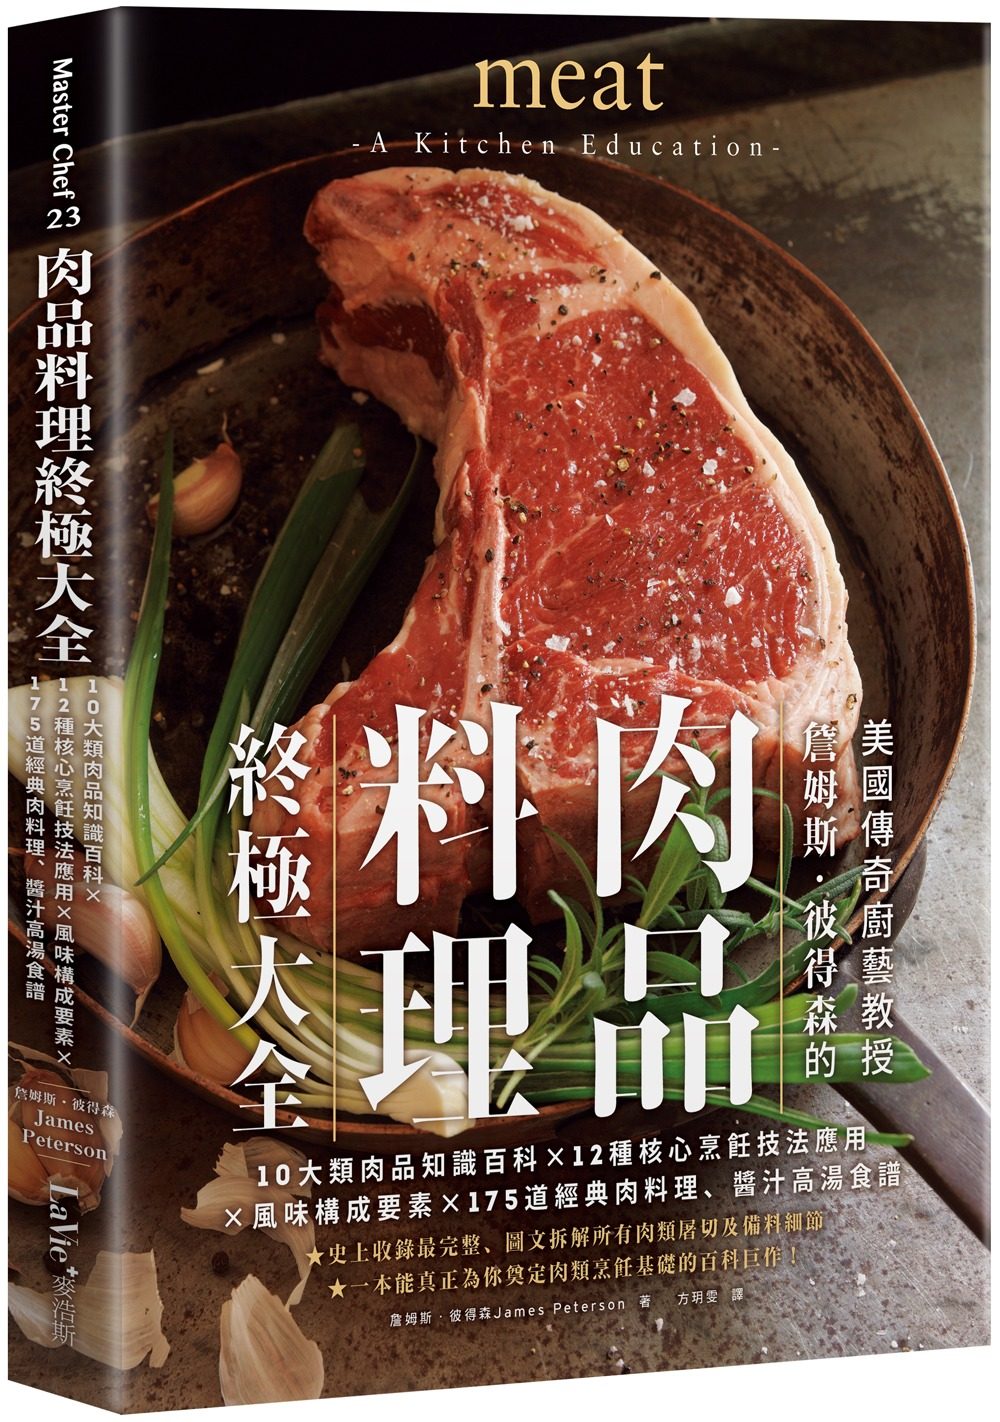 肉品料理終極大全：10大類肉品知識百科x12種核心烹飪技法應用x風味構成要素x